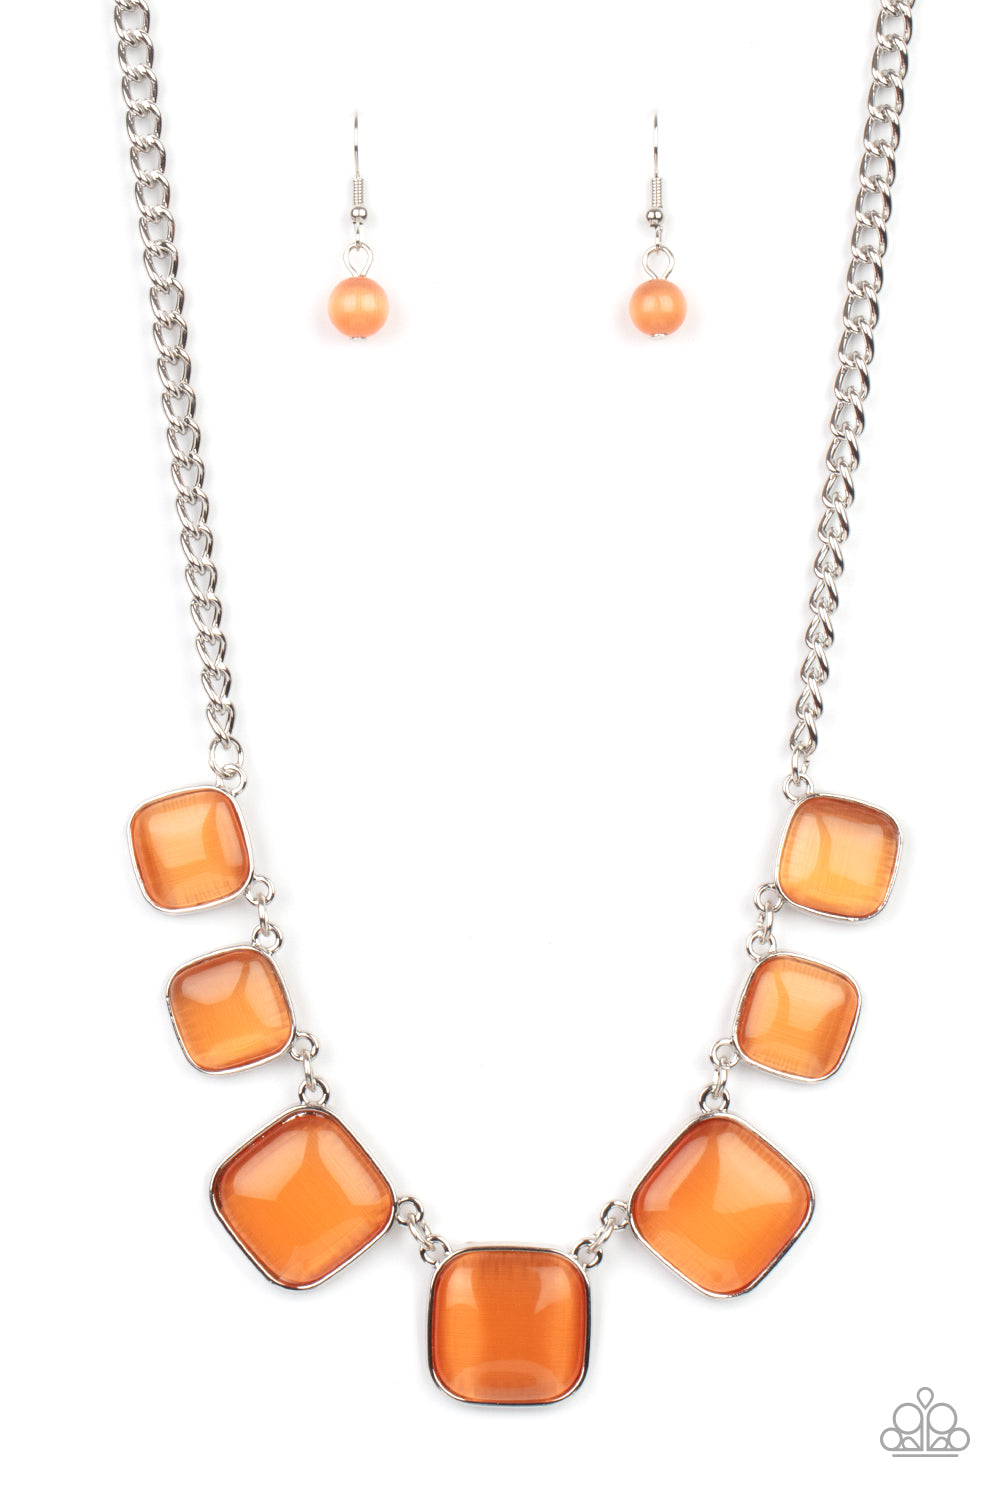 Aura Allure Orange-Necklace